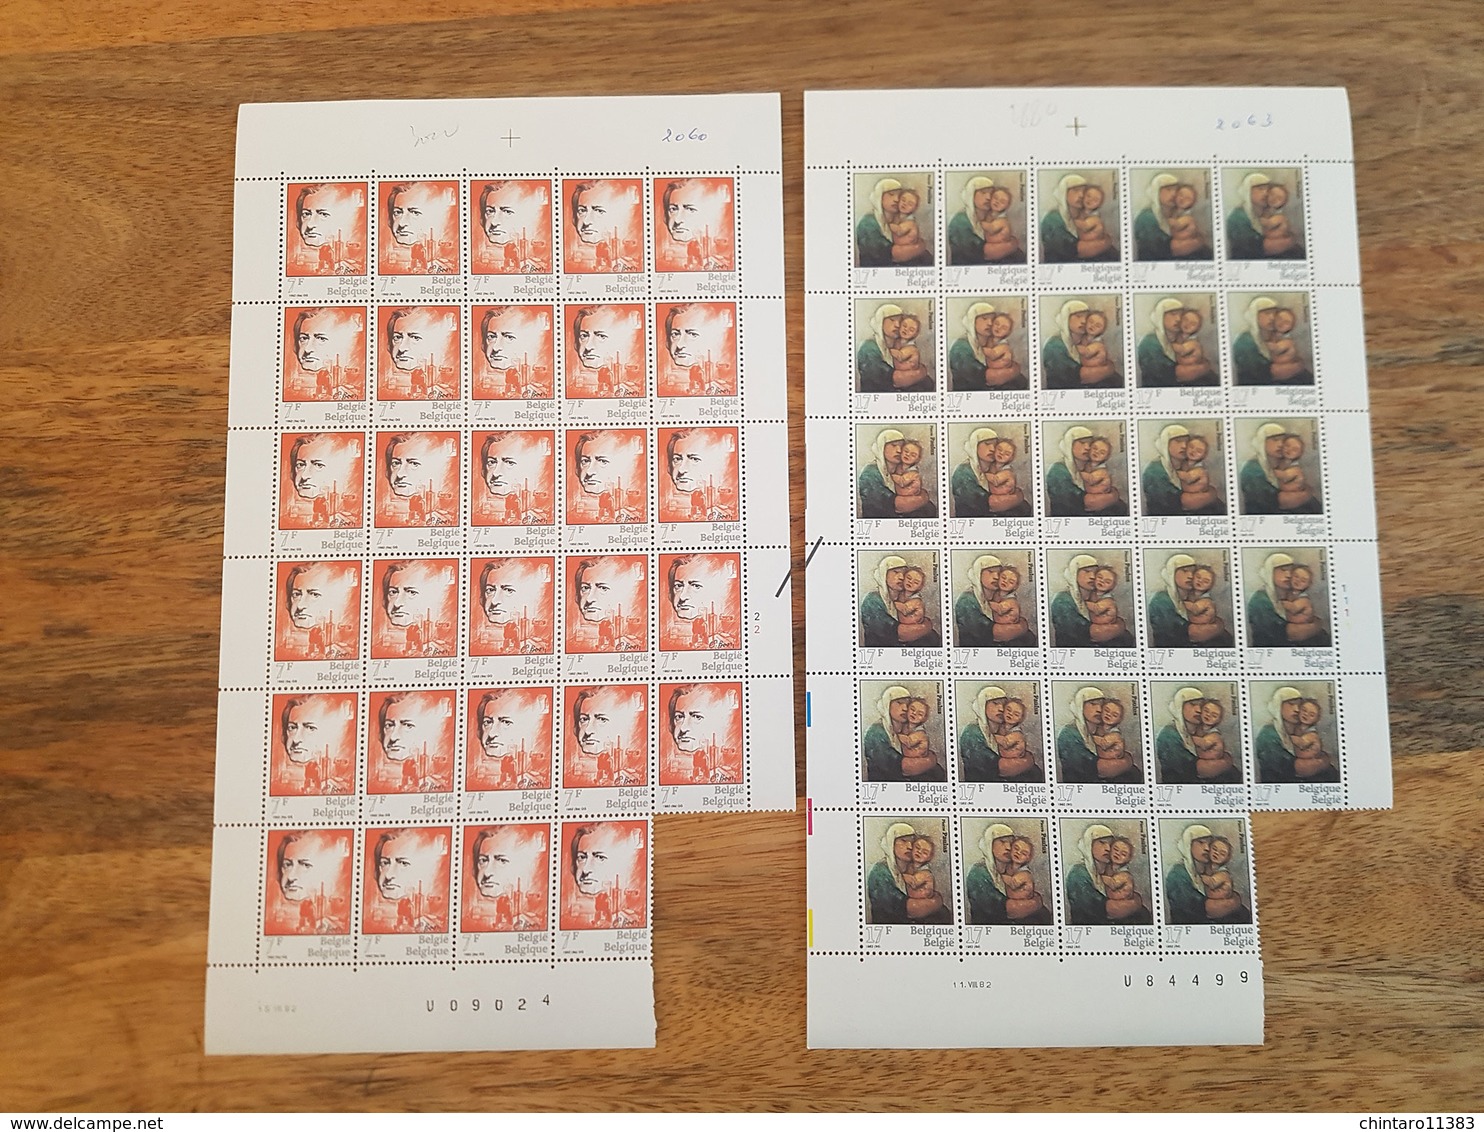 Lot feuilles incomplètes (manque 1) de timbres Belgique - Année 1982